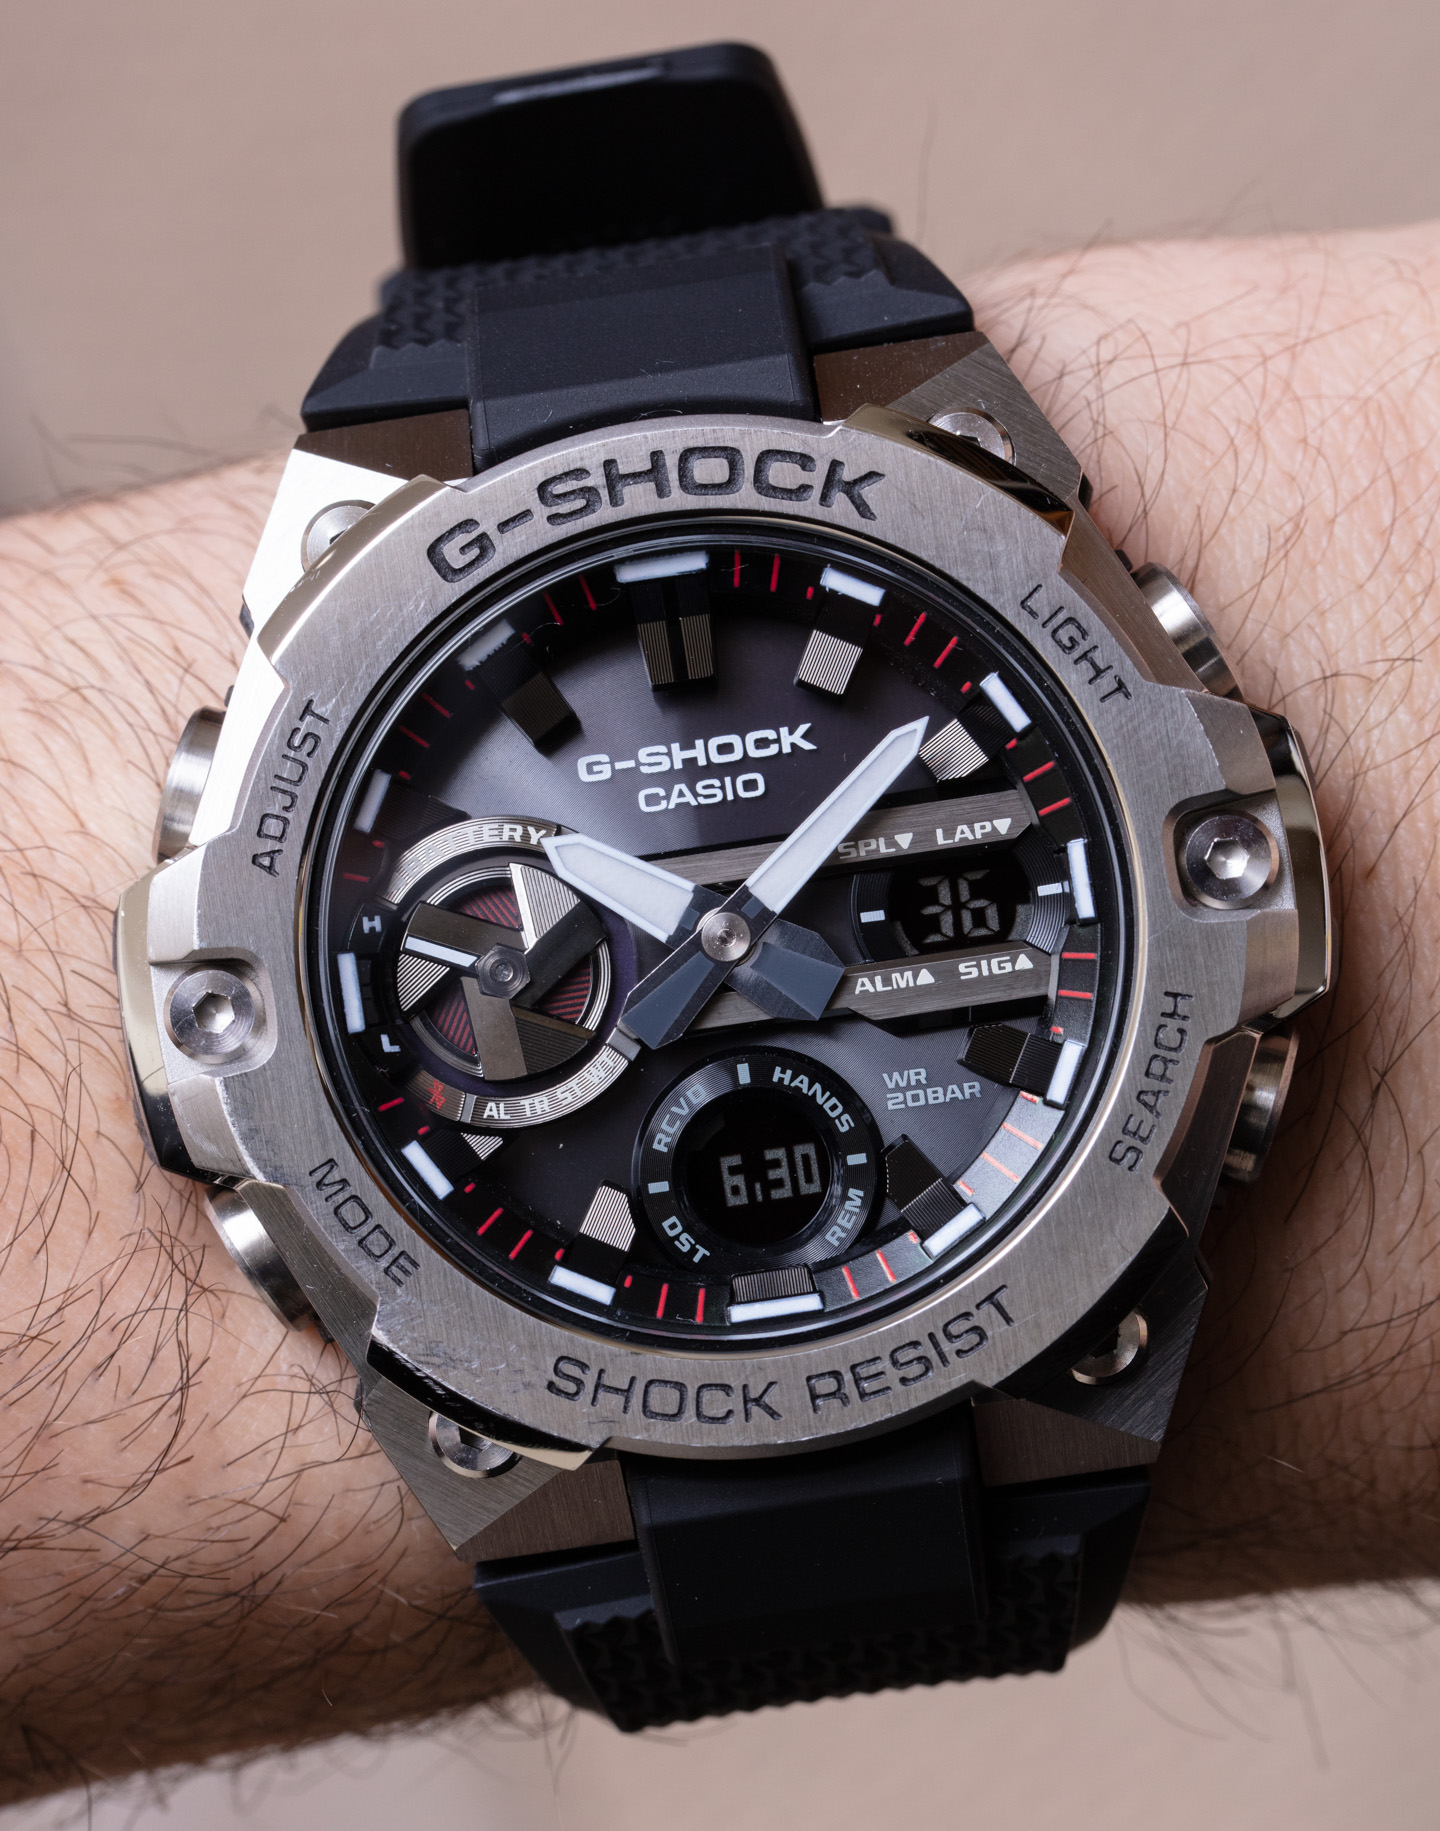 Casio G-SHOCK G-STEEL GSTB300S-1A Watch Review